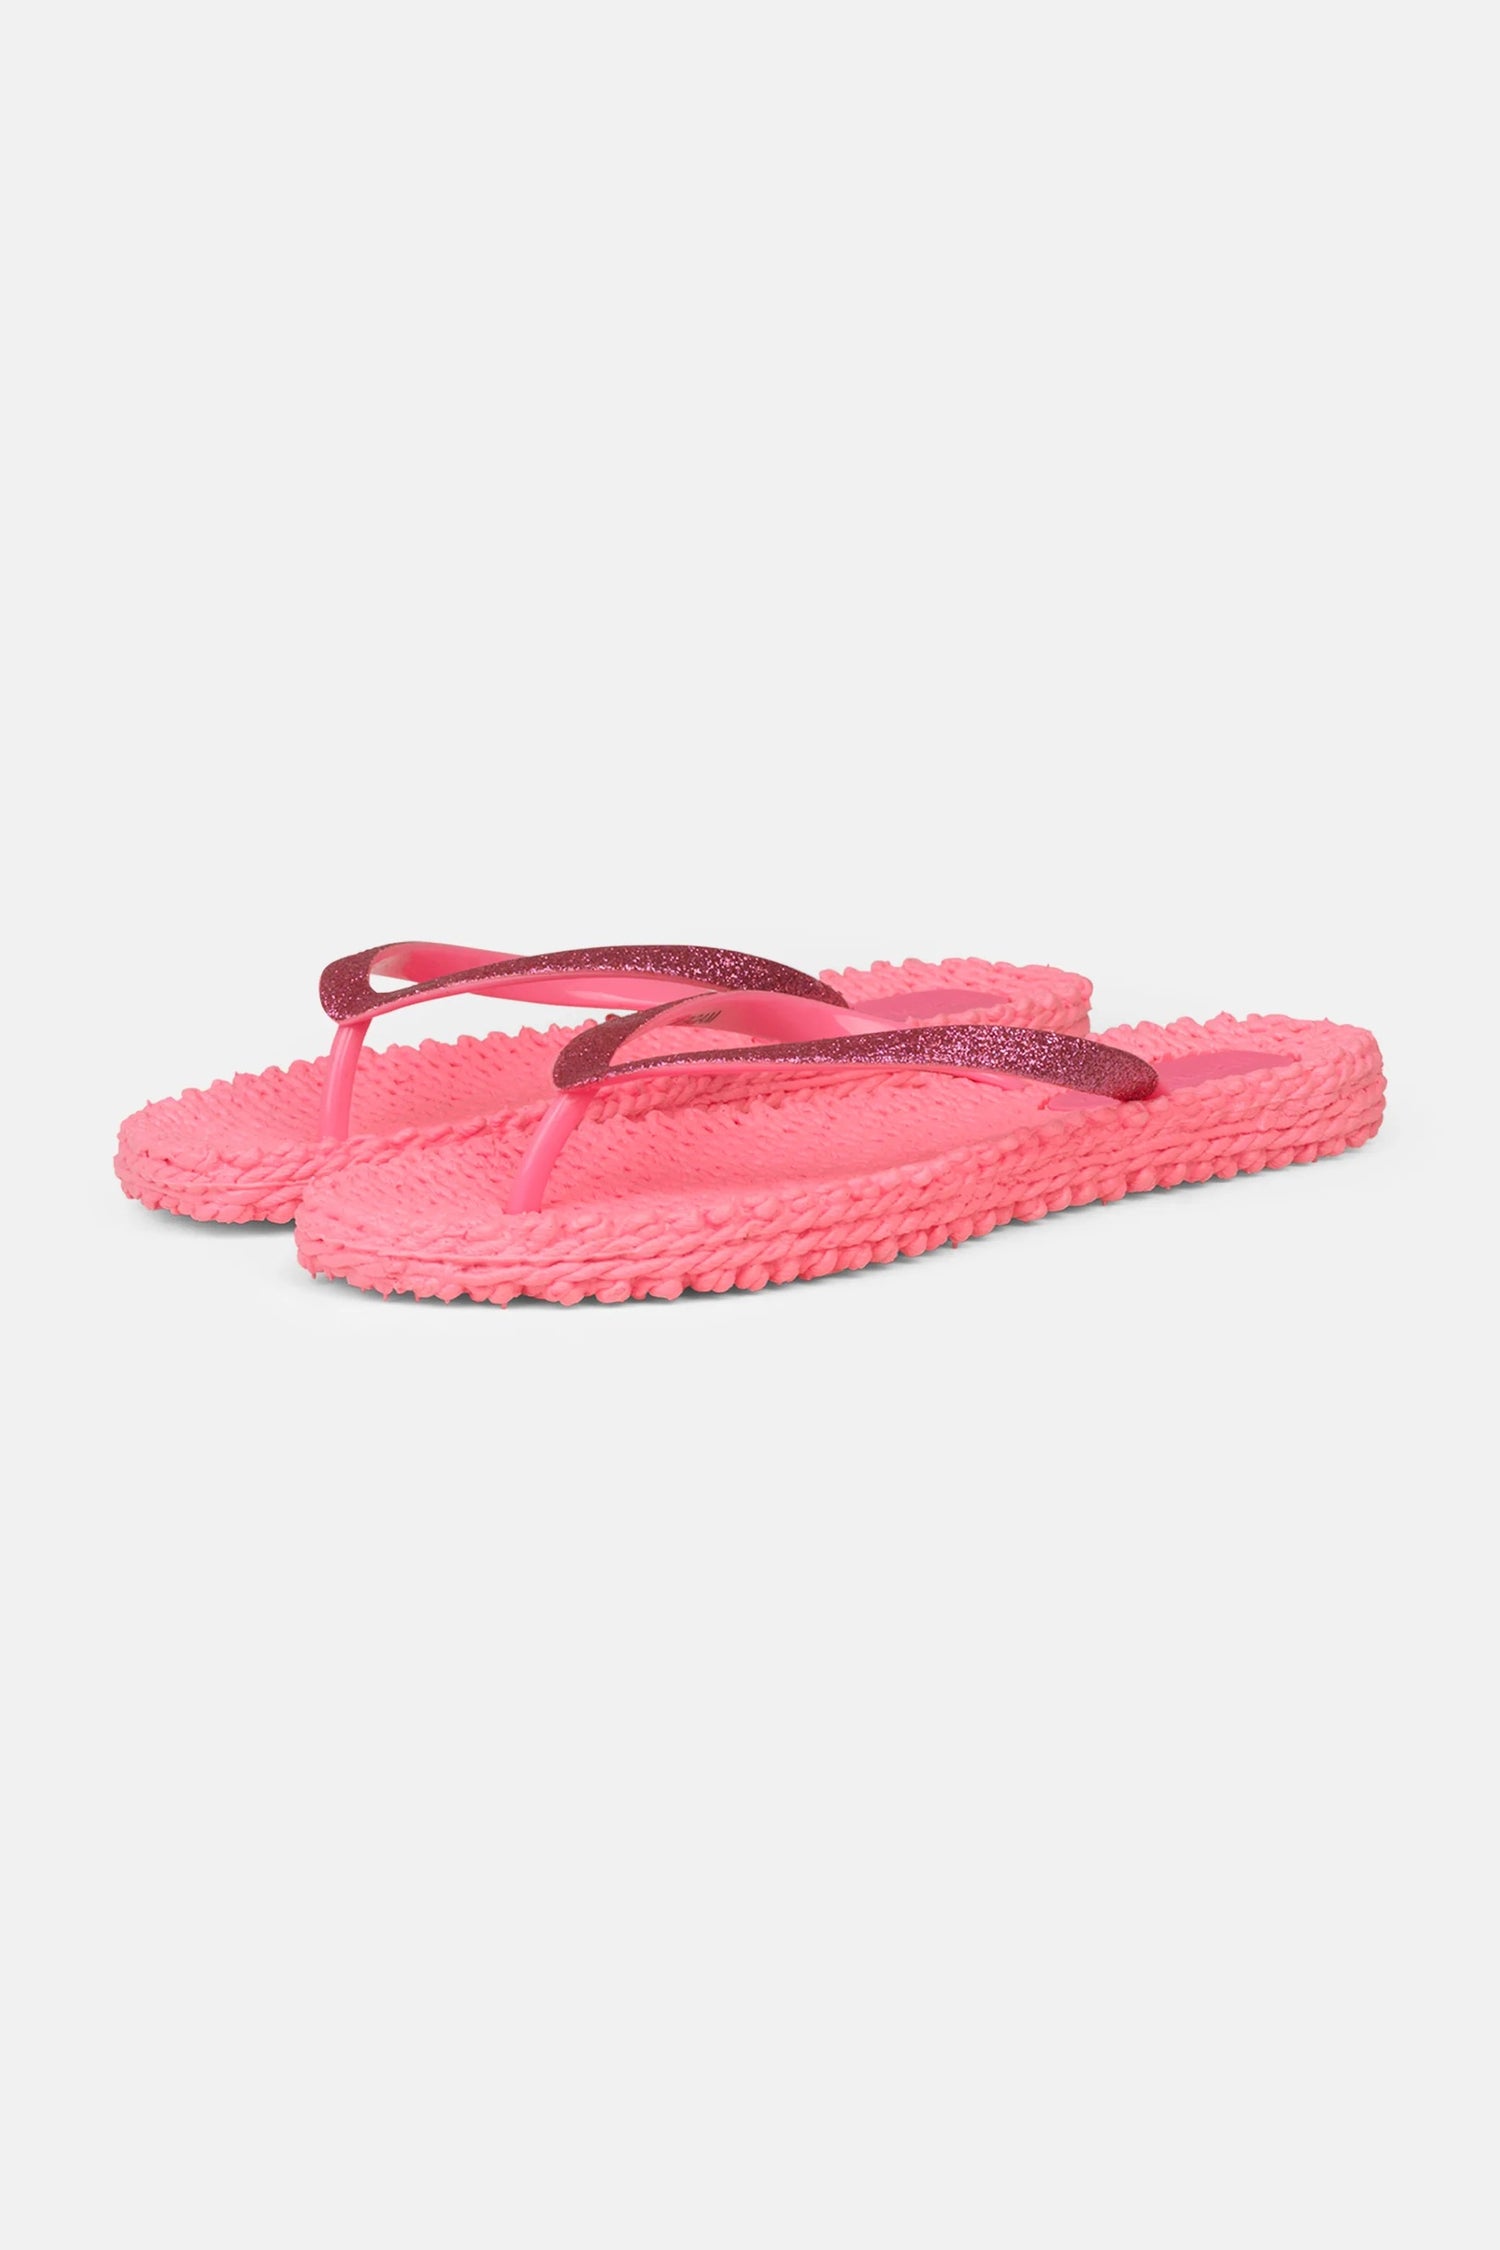 Flip Flop Cheerful01 - Pink